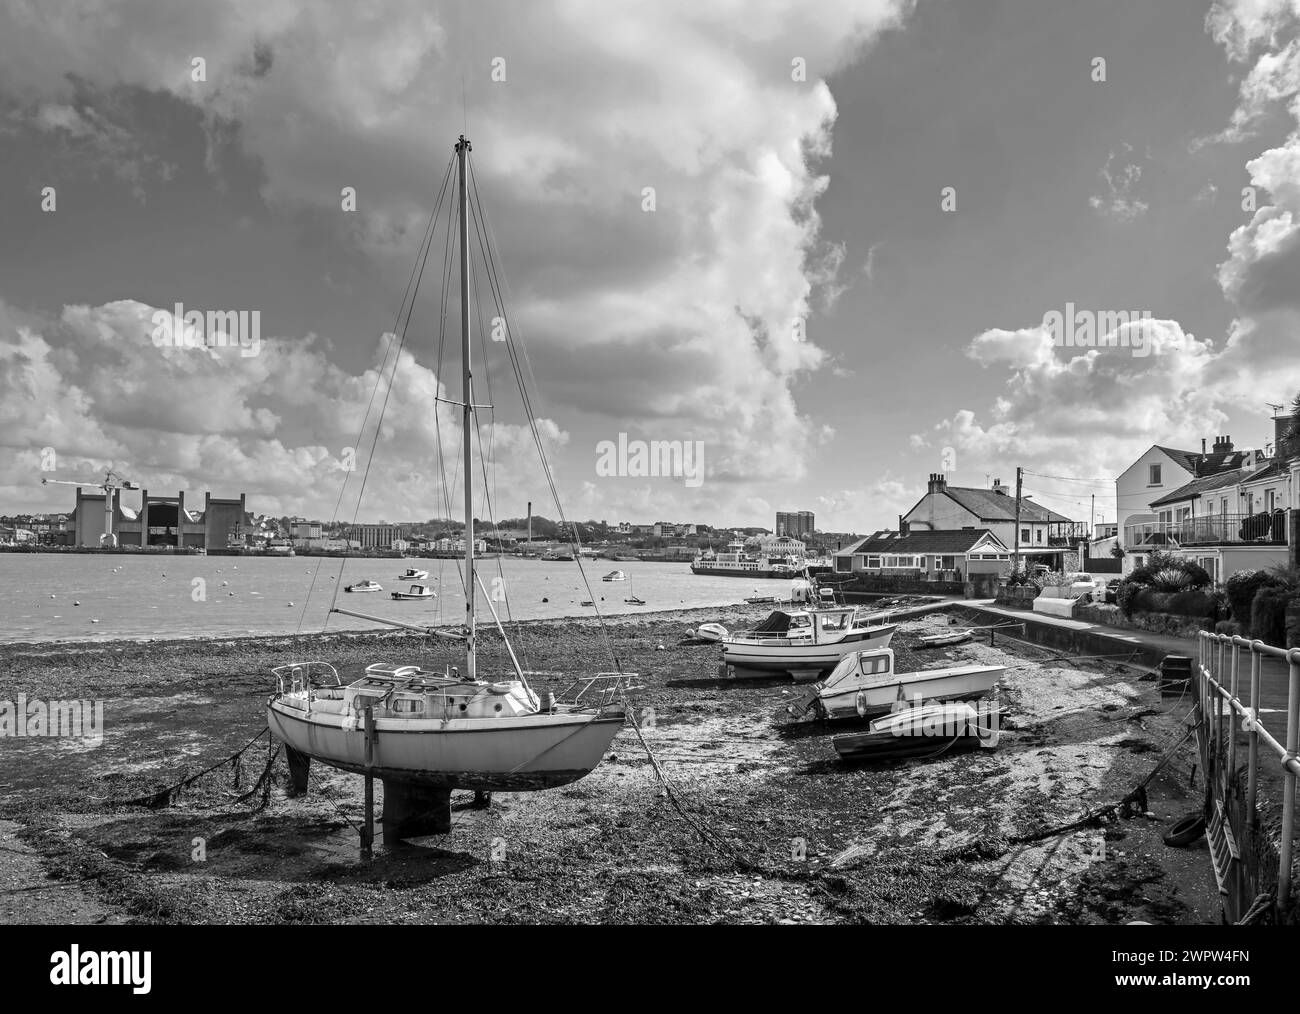 Image monochrome de la rivière à Torpoint dans le sud-est de Cornwall, avec des bateaux amarrés sur la plage. De l'autre côté de la rivière Tamar se trouve Devonport Dockyard Banque D'Images